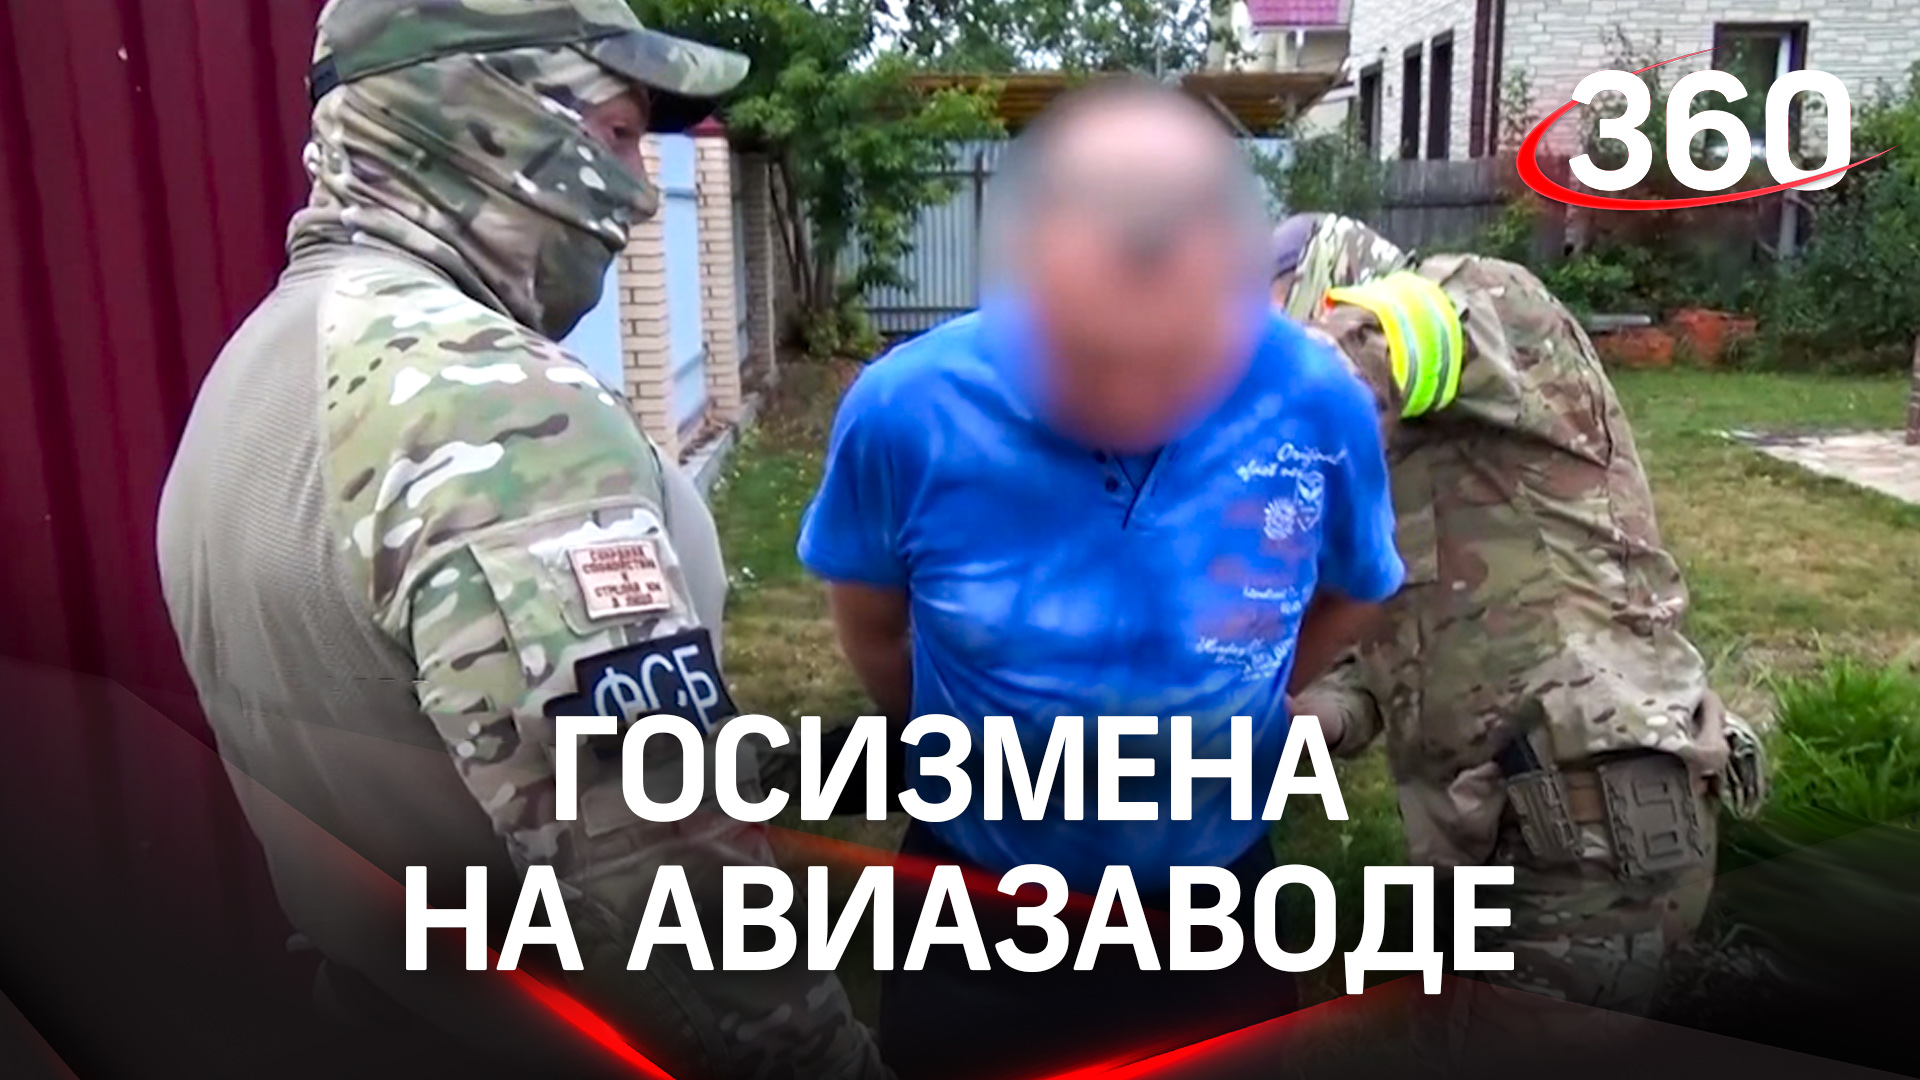 ФСБ задержала за госизмену сотрудника авиазавода в Подмосковье: он отправил фото чертежей самолетов